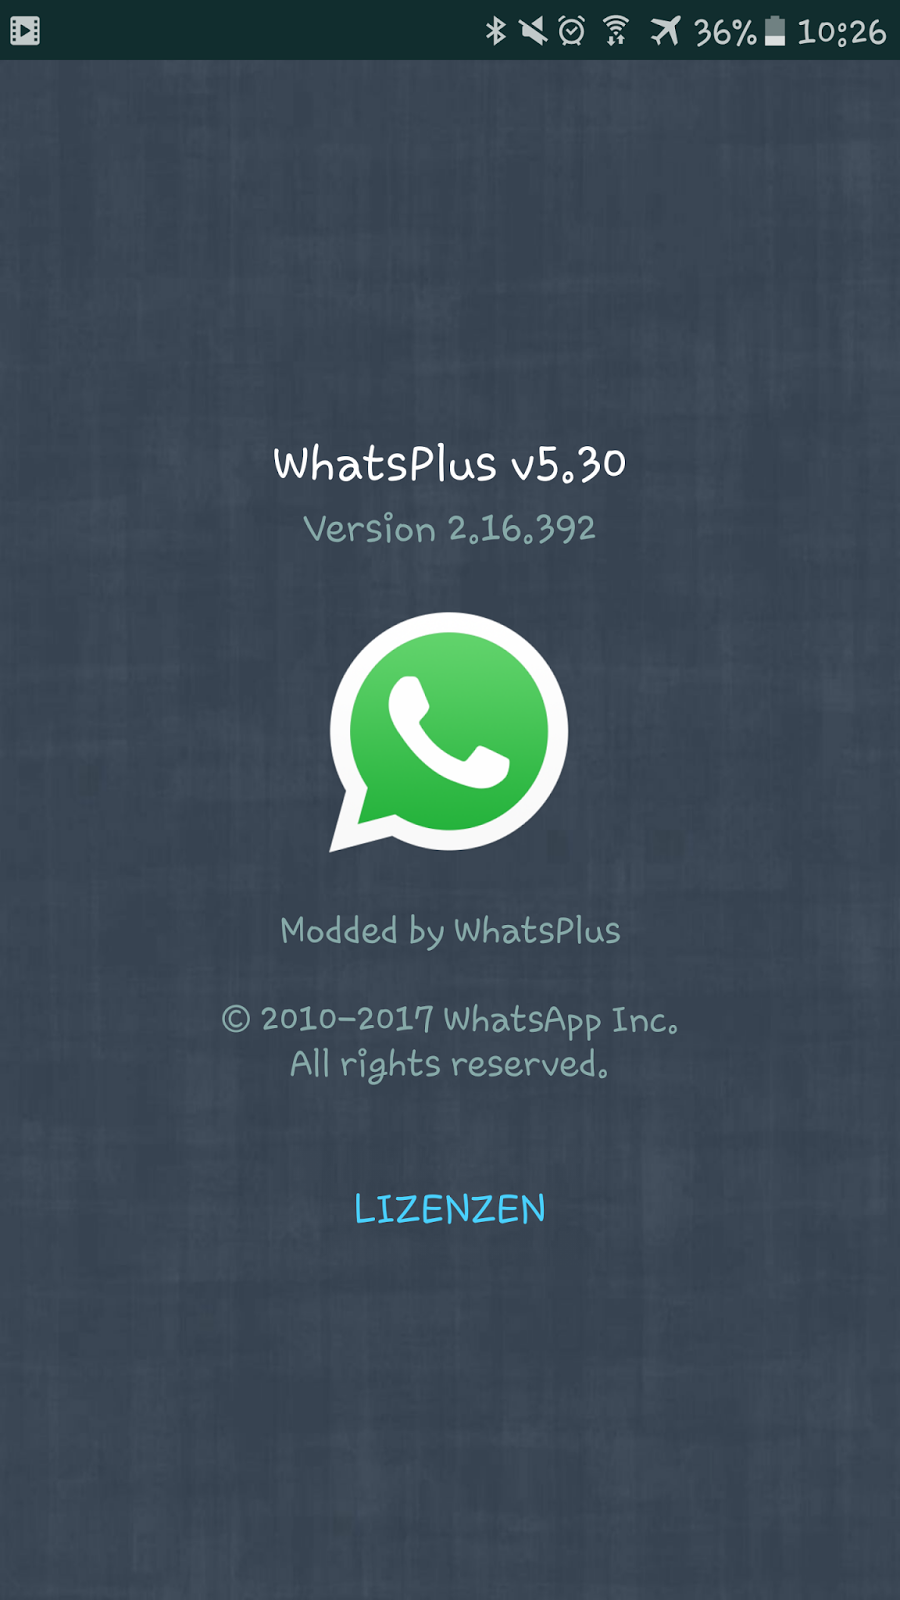 Whatsapp plus yeni